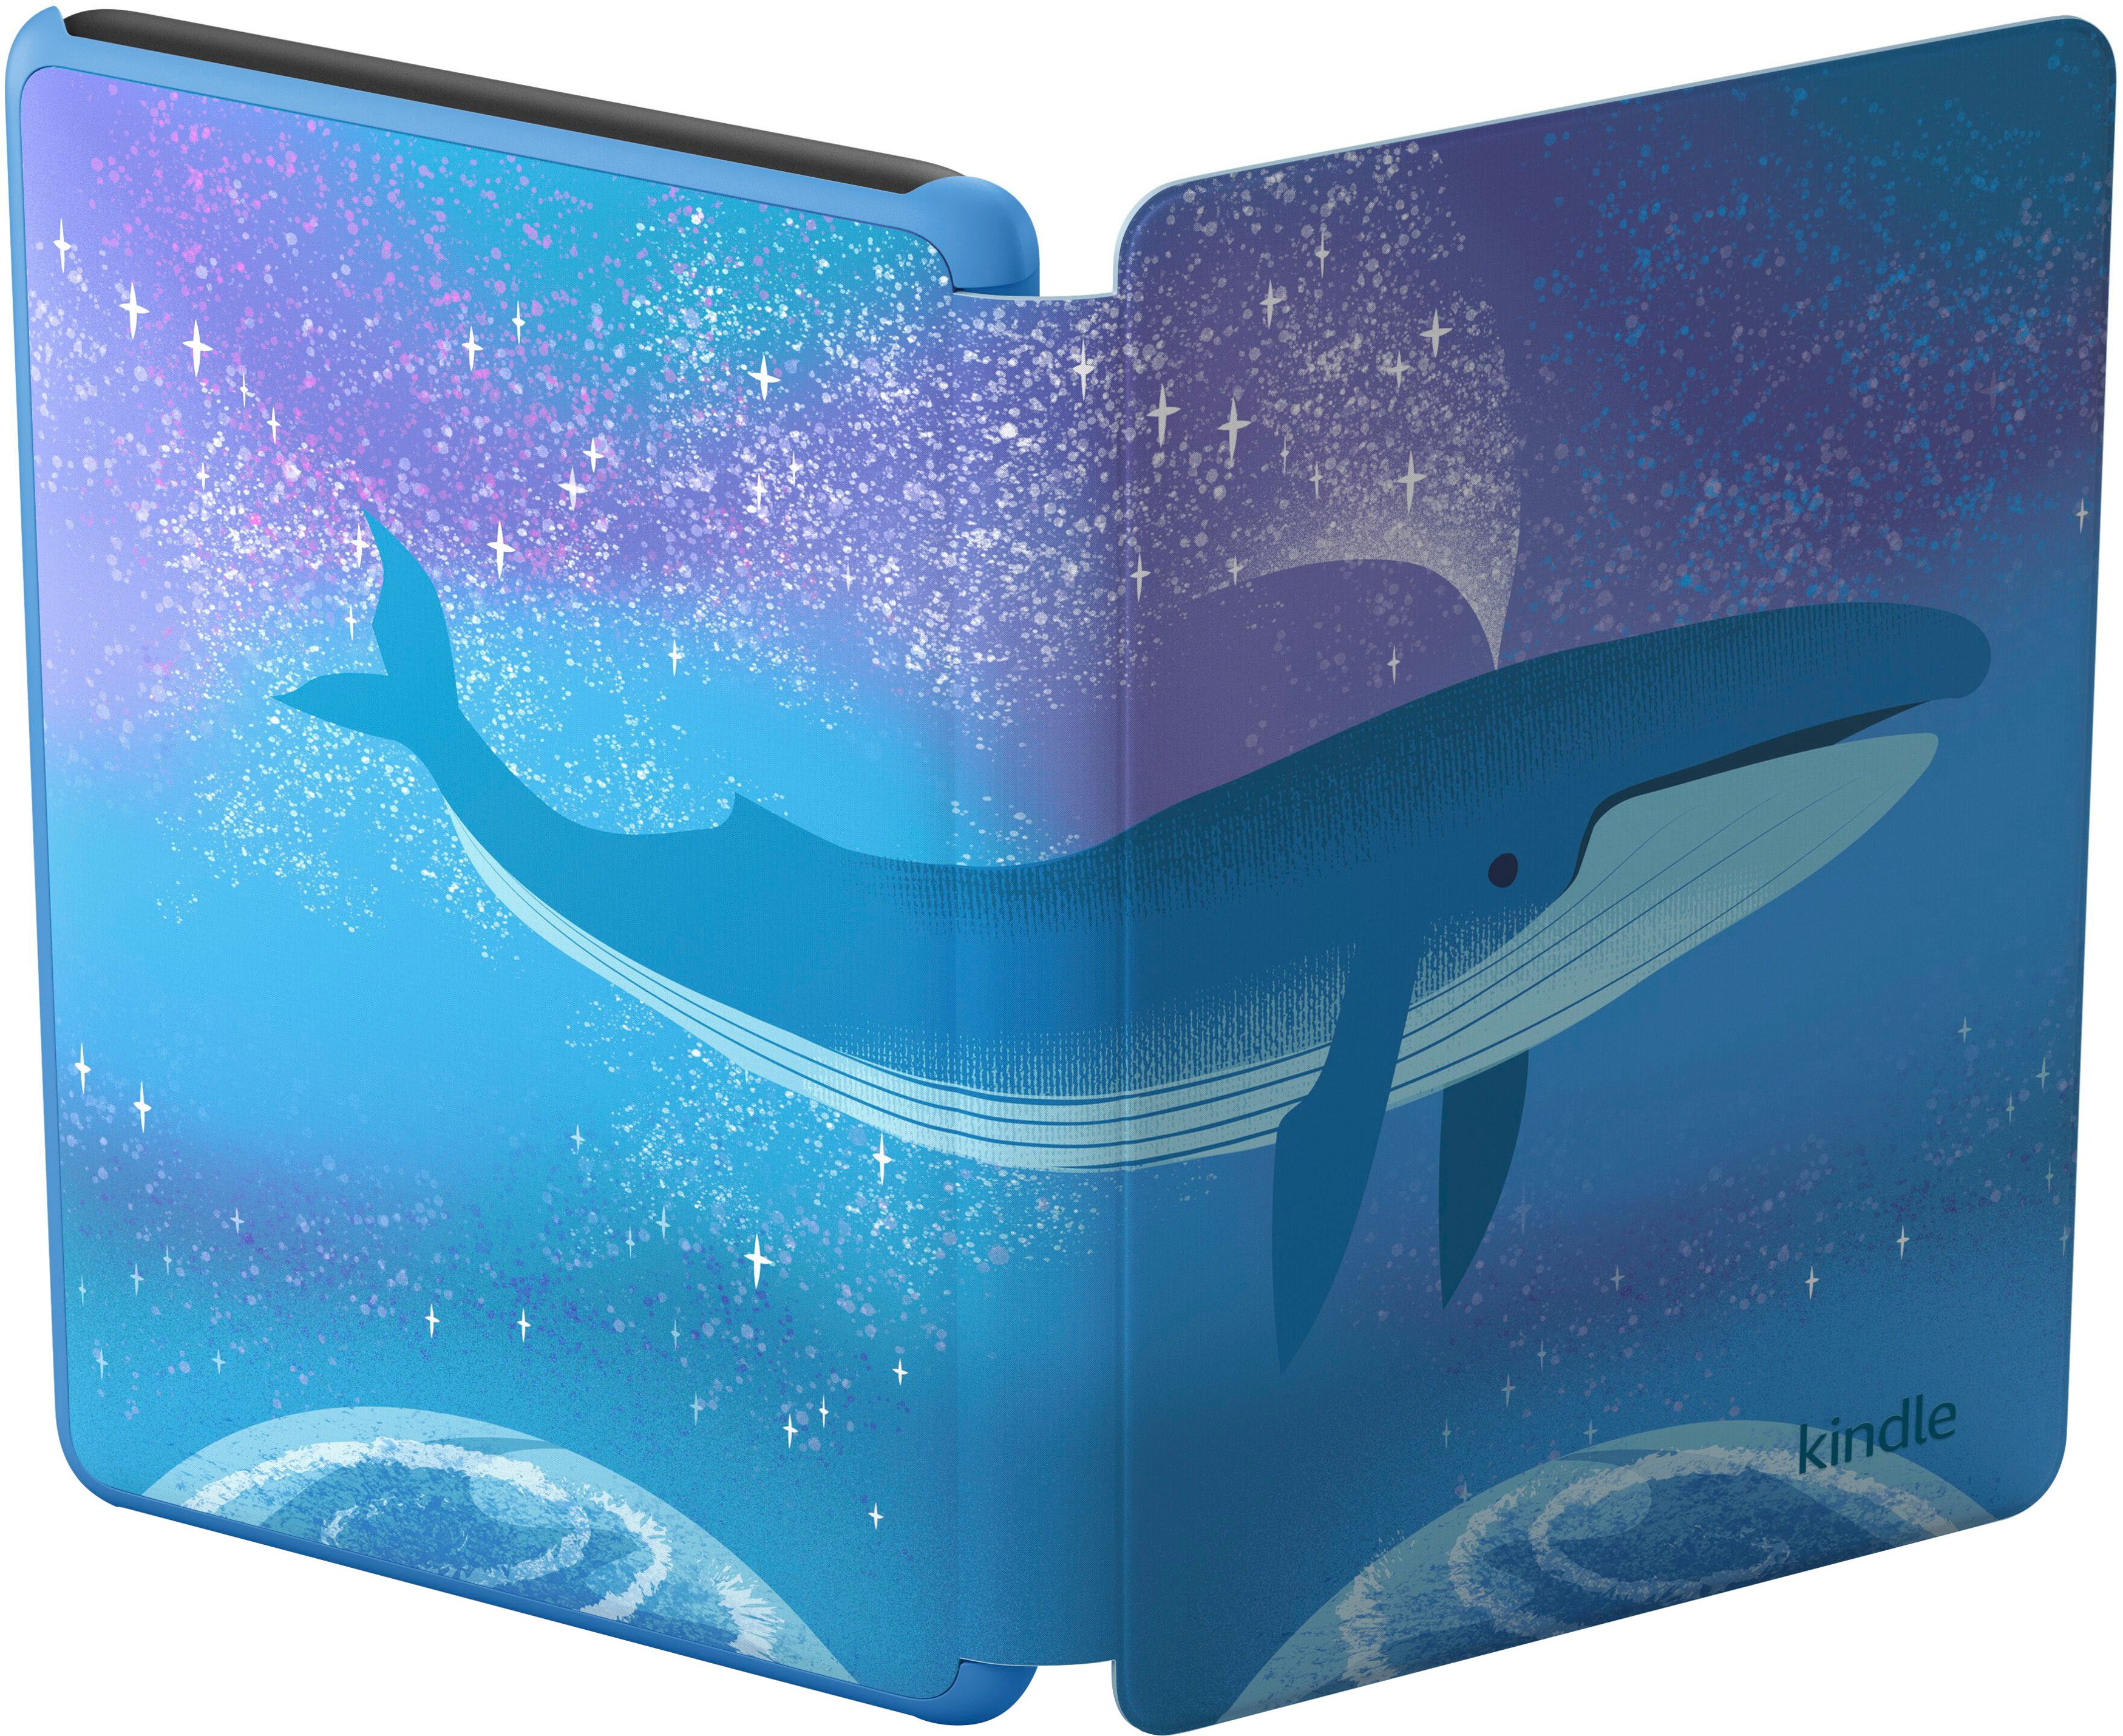 Kindle Kids 6 E-reader (2022 Release) - Ocean Explorer : Target